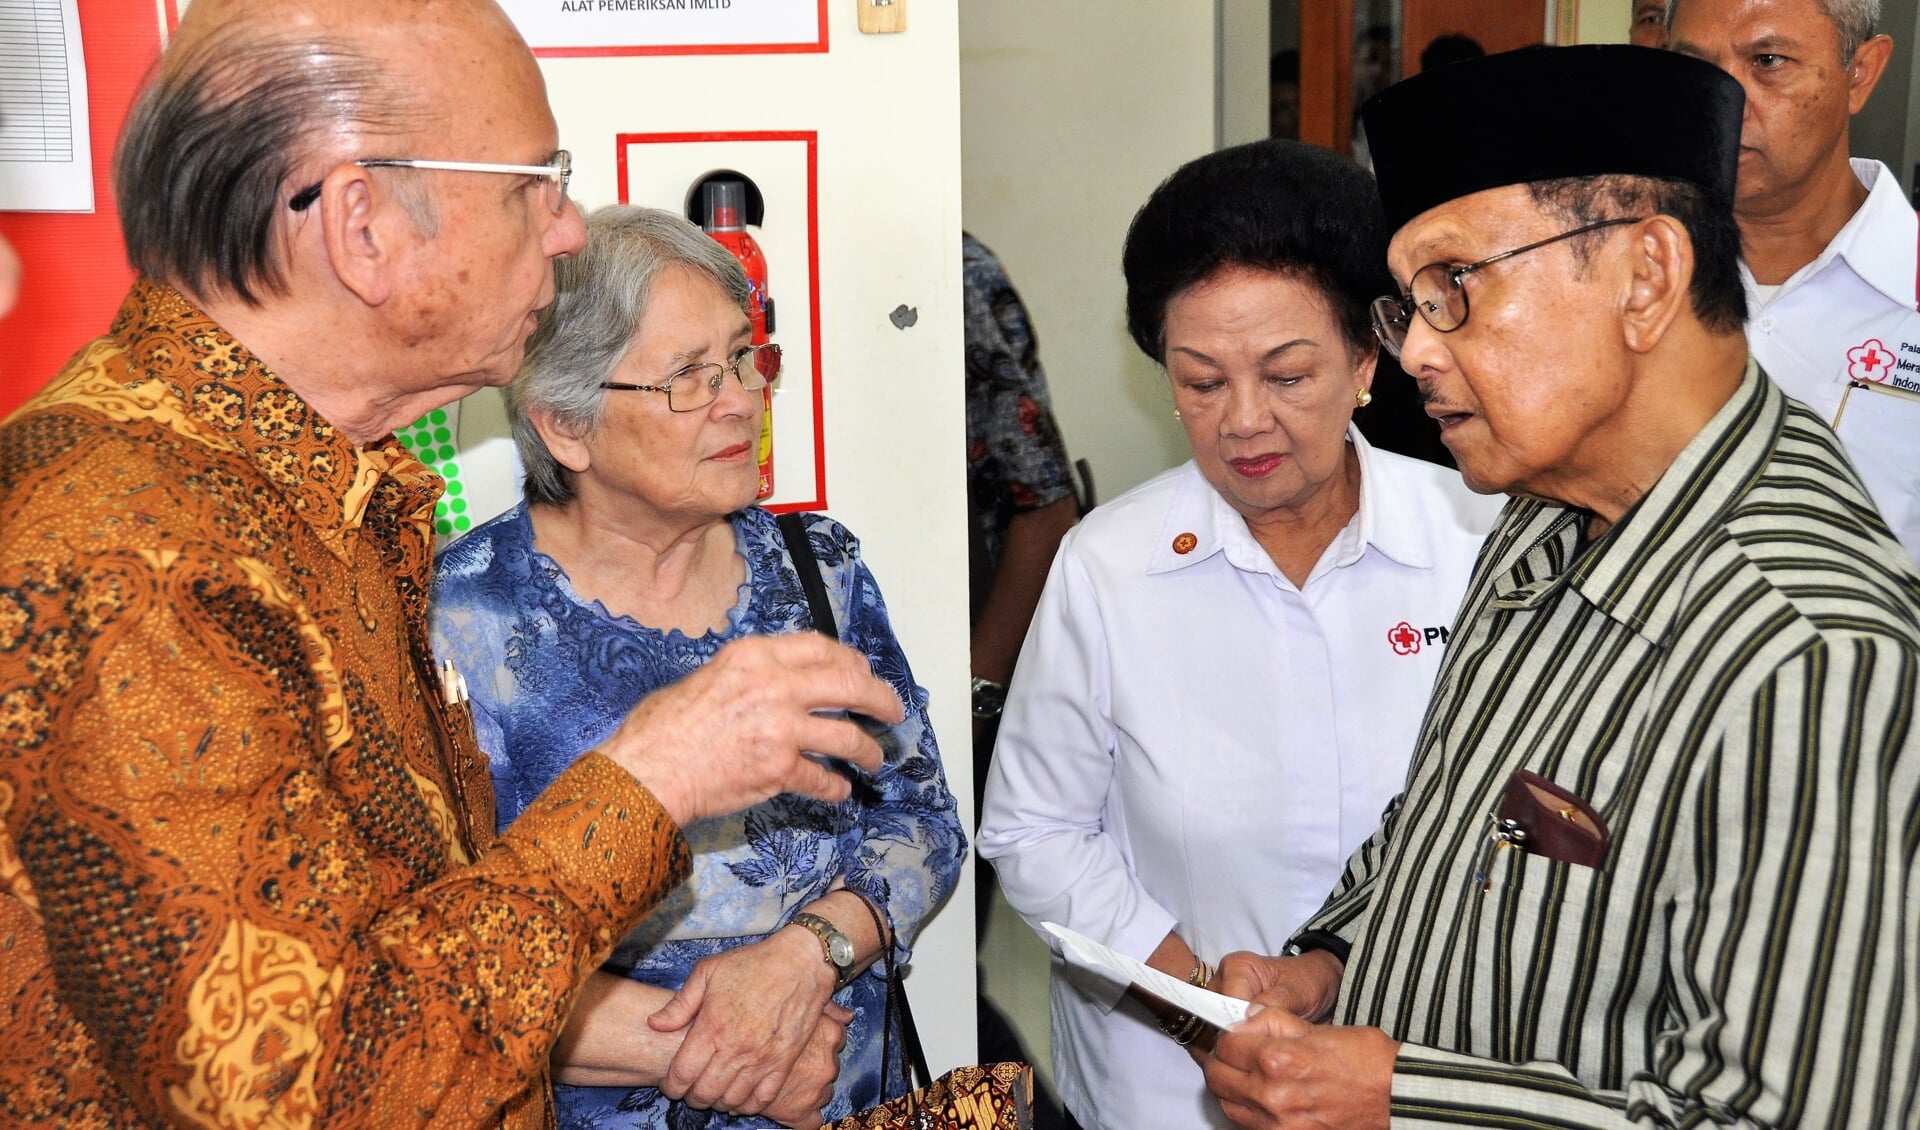 Links Ton Donkersloot met echtgenote Diana, rechts Ex-President BJ Habibie en zijn zus en partner van Child Support, Sri Soedarsono.